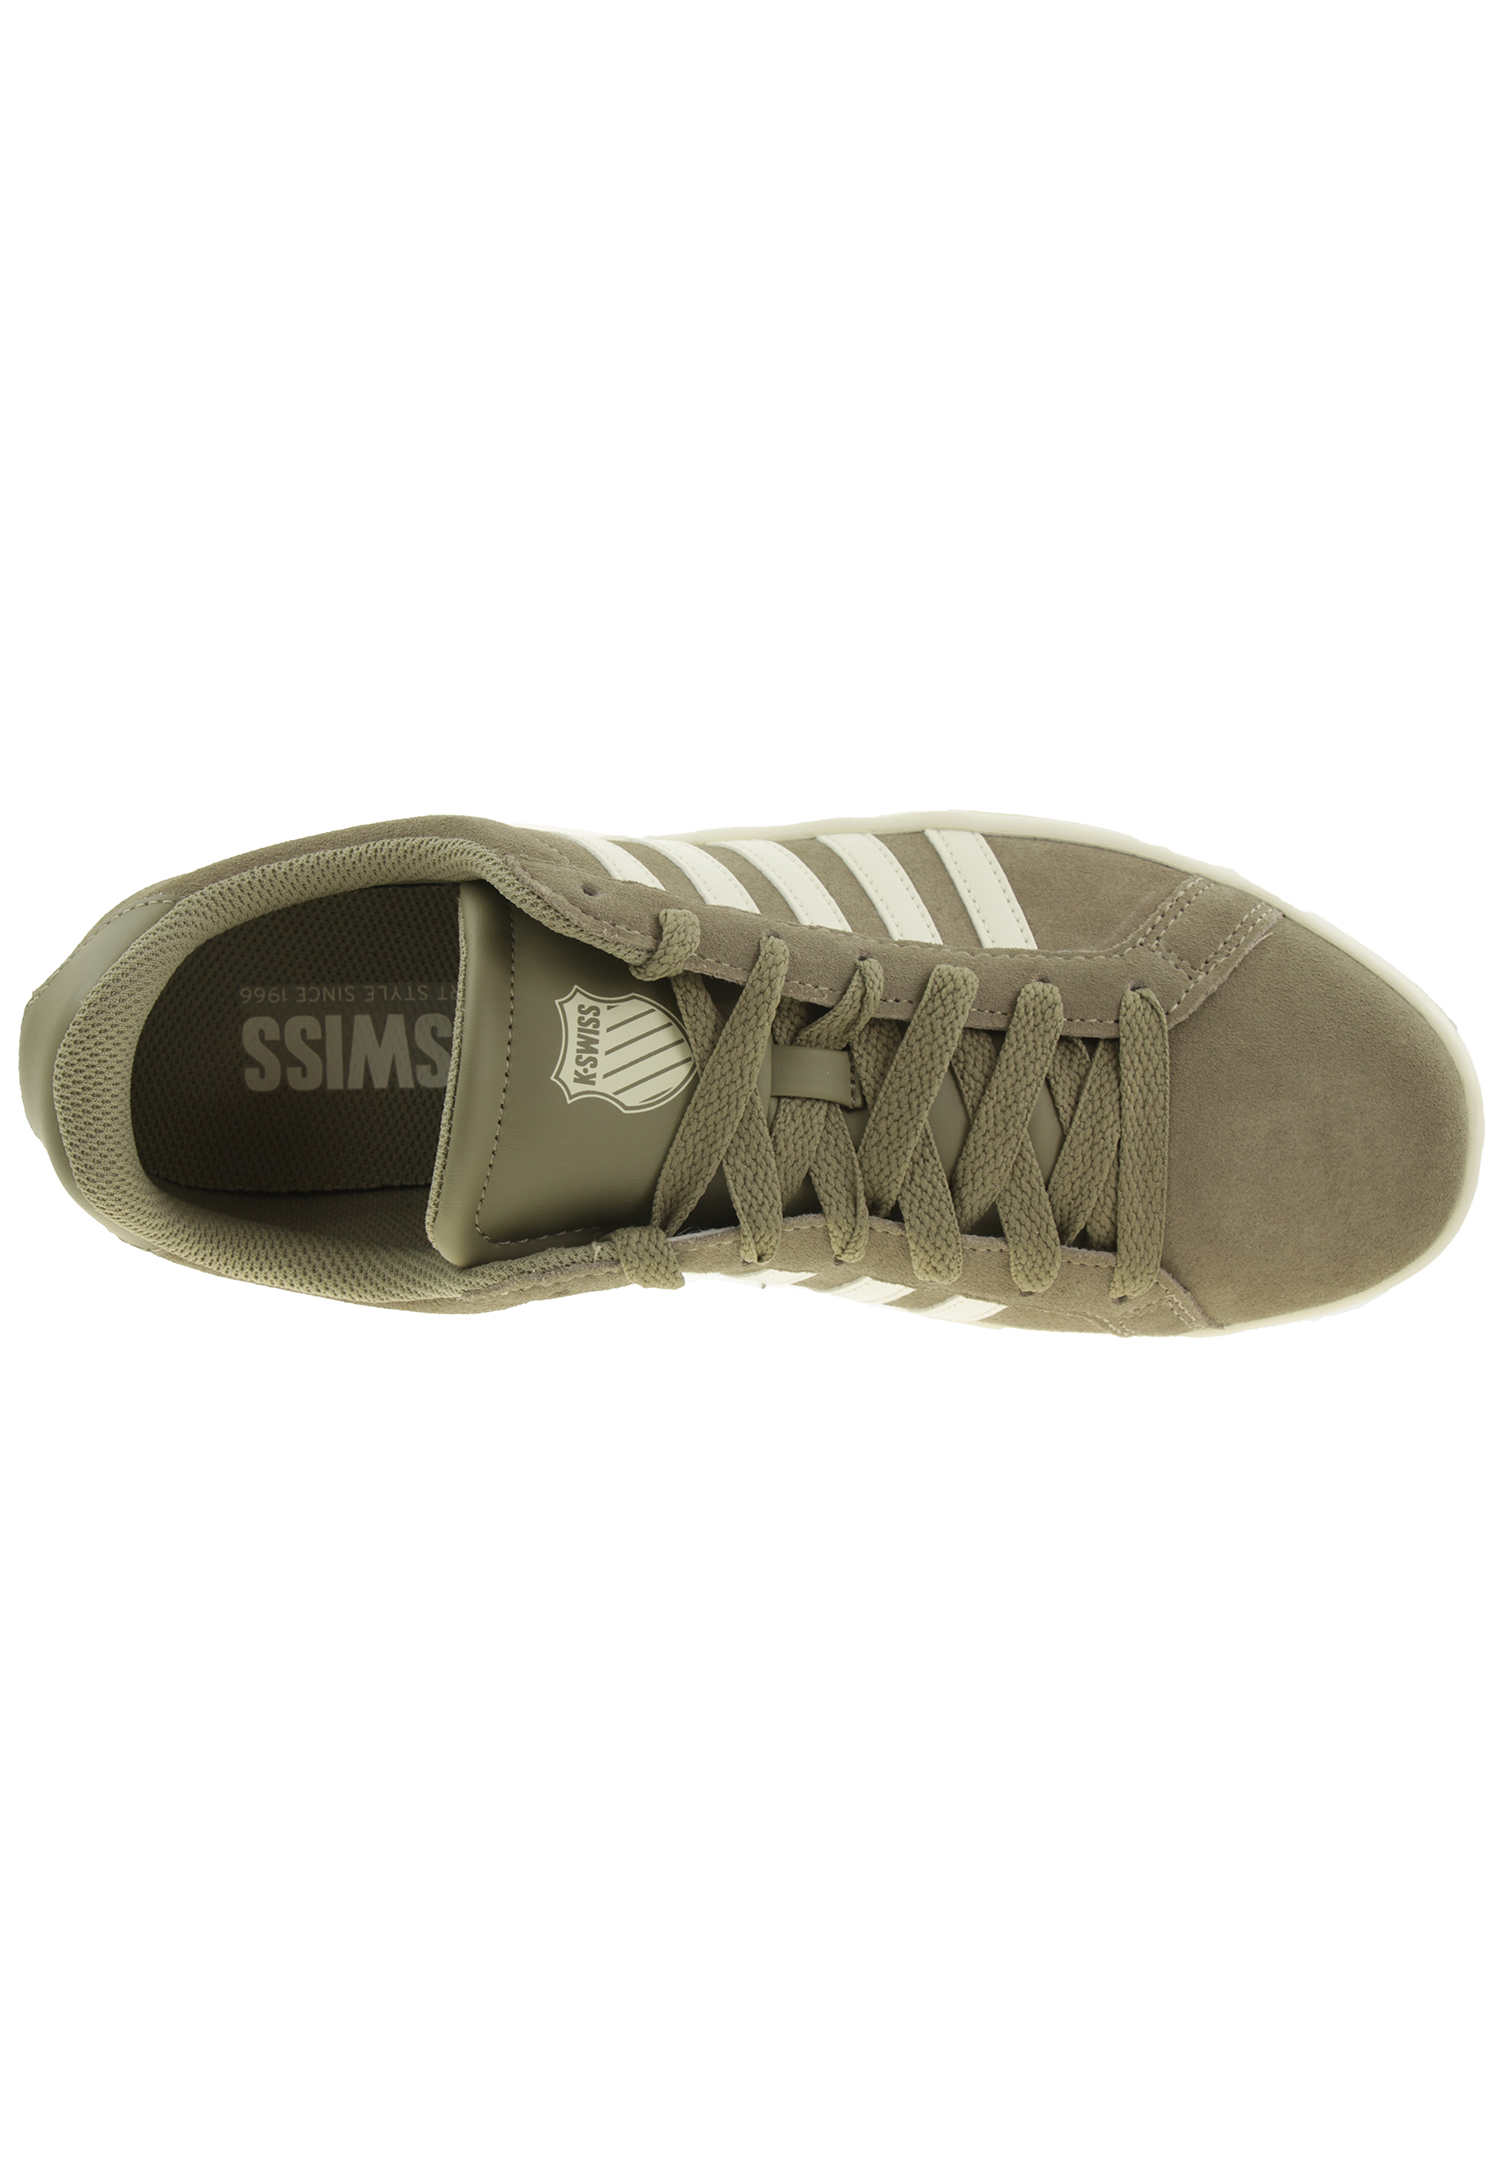 K-SWISS Court TIEBREAK SDE Herren Sneaker 07012-036-M braun